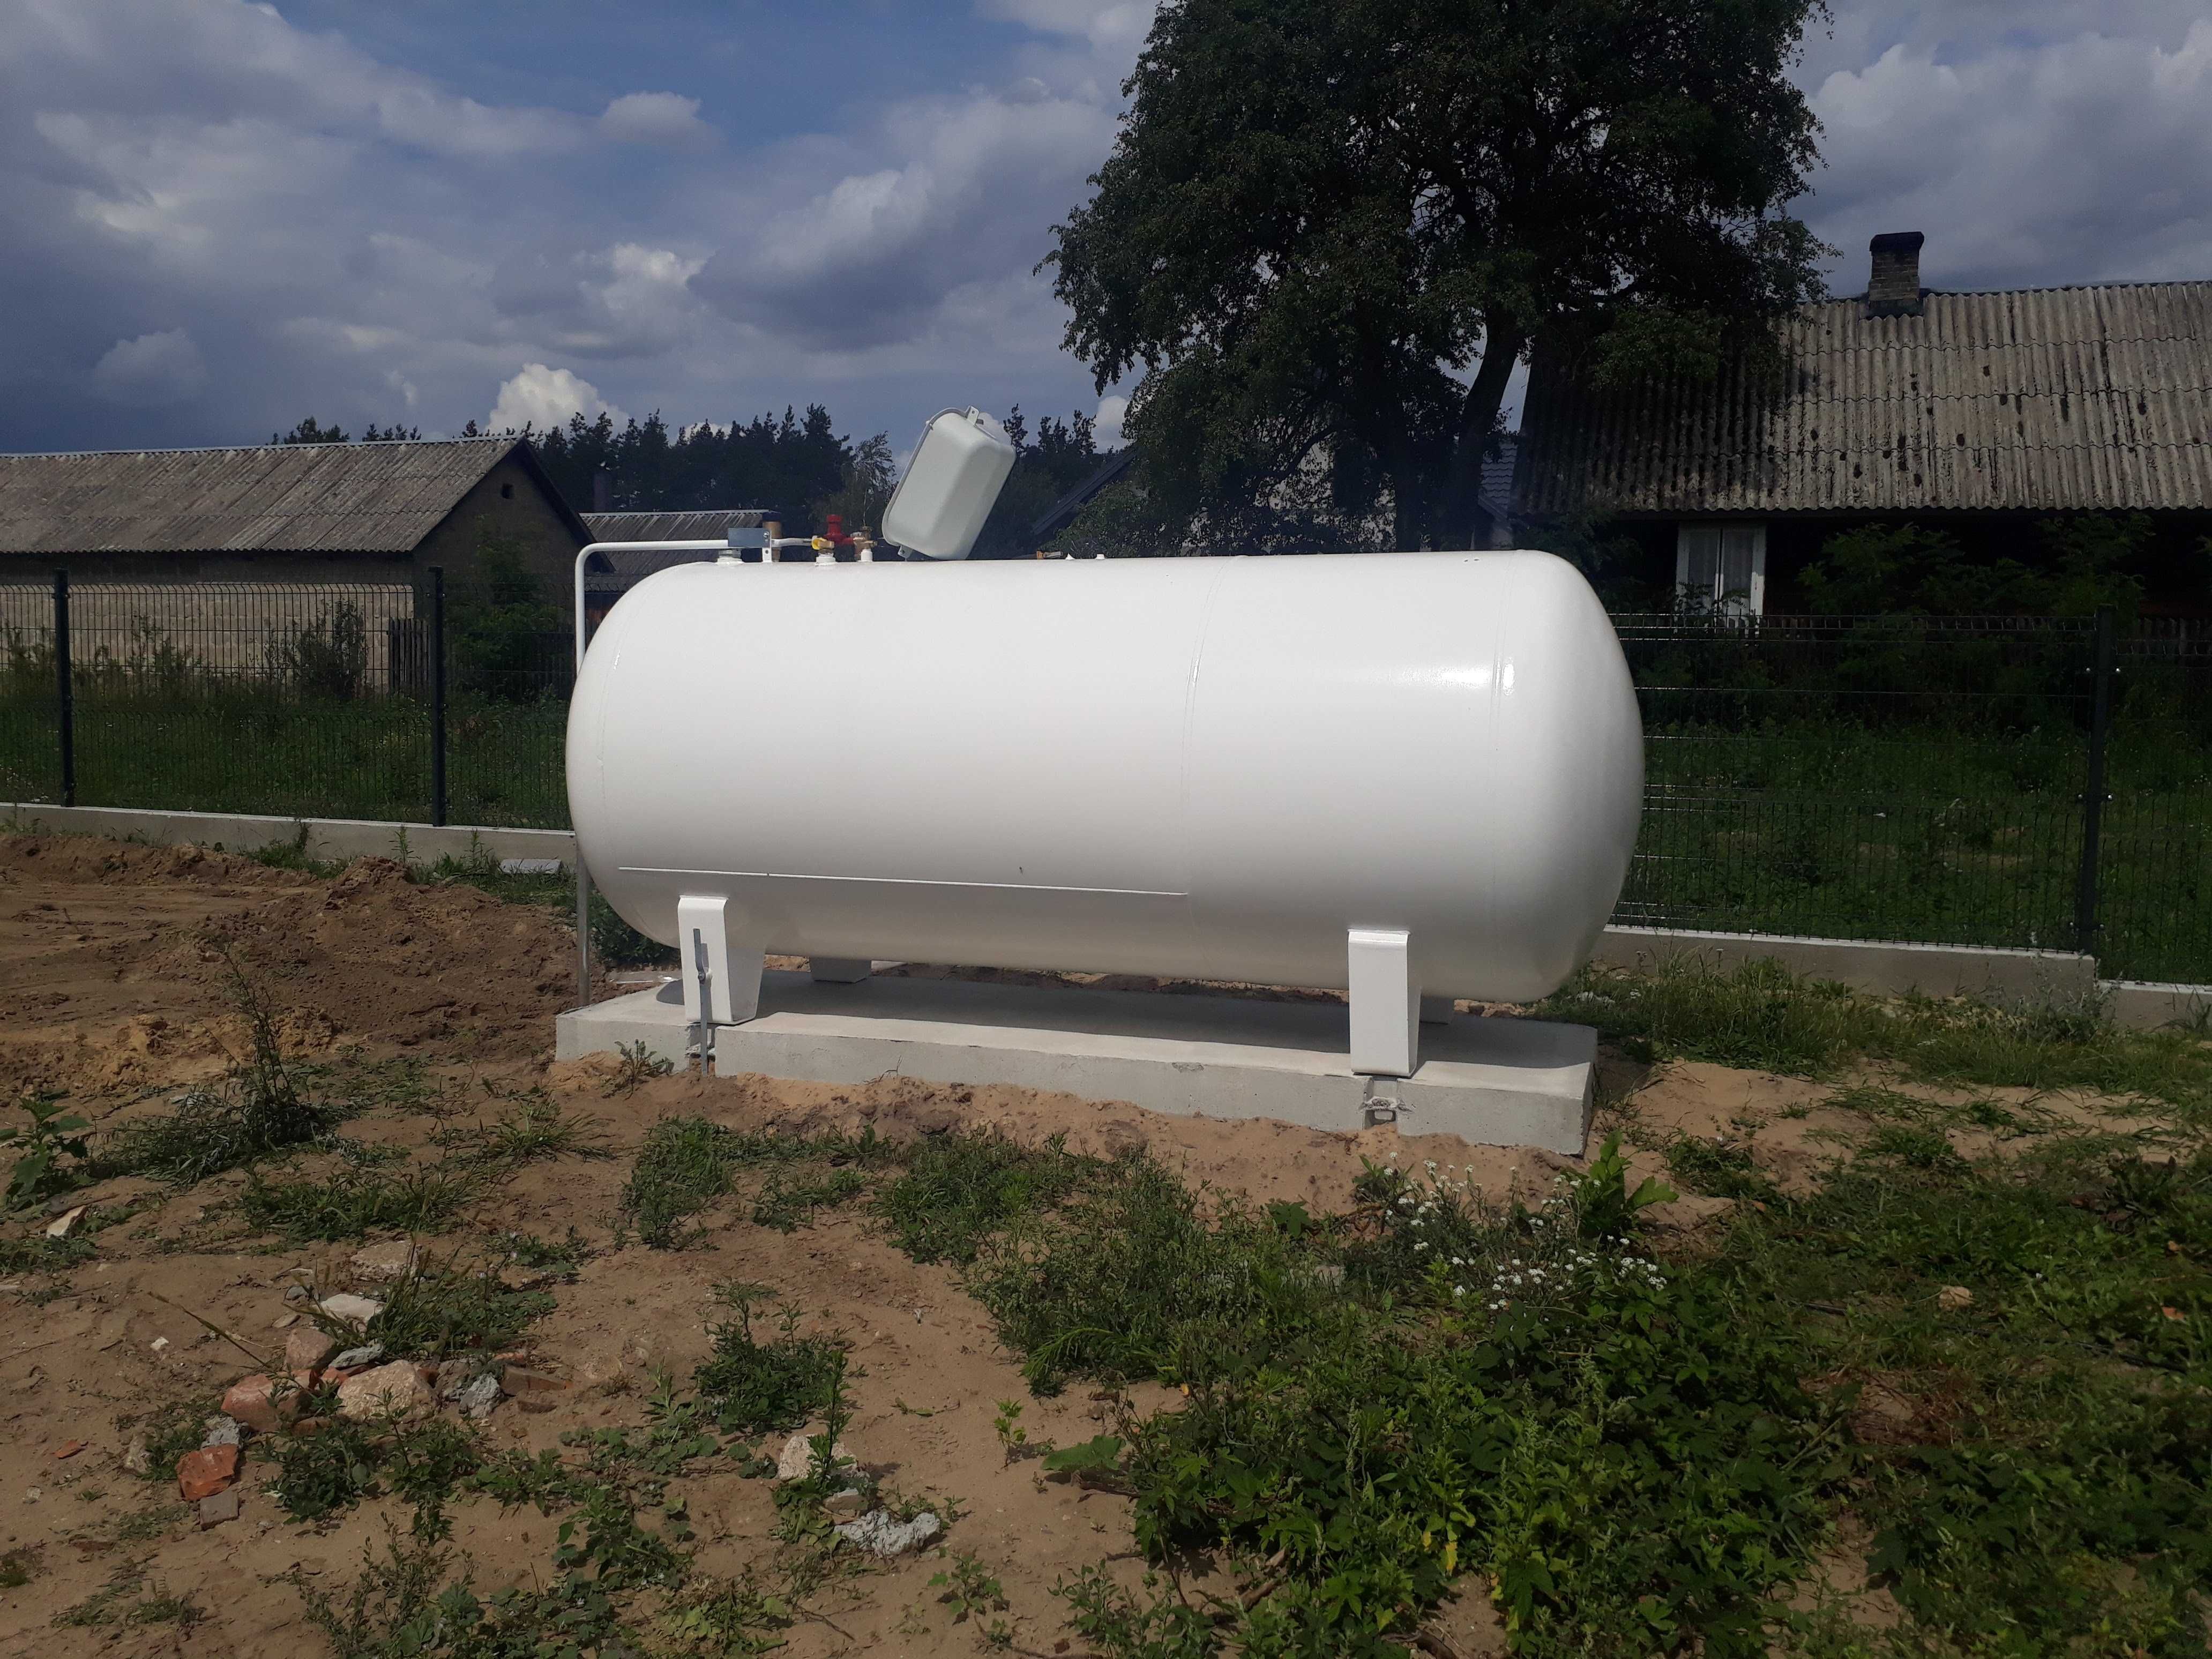 Zbiornik na gaz płynny LPG 2700L / 3600L / 4850L / 6400L naziemny